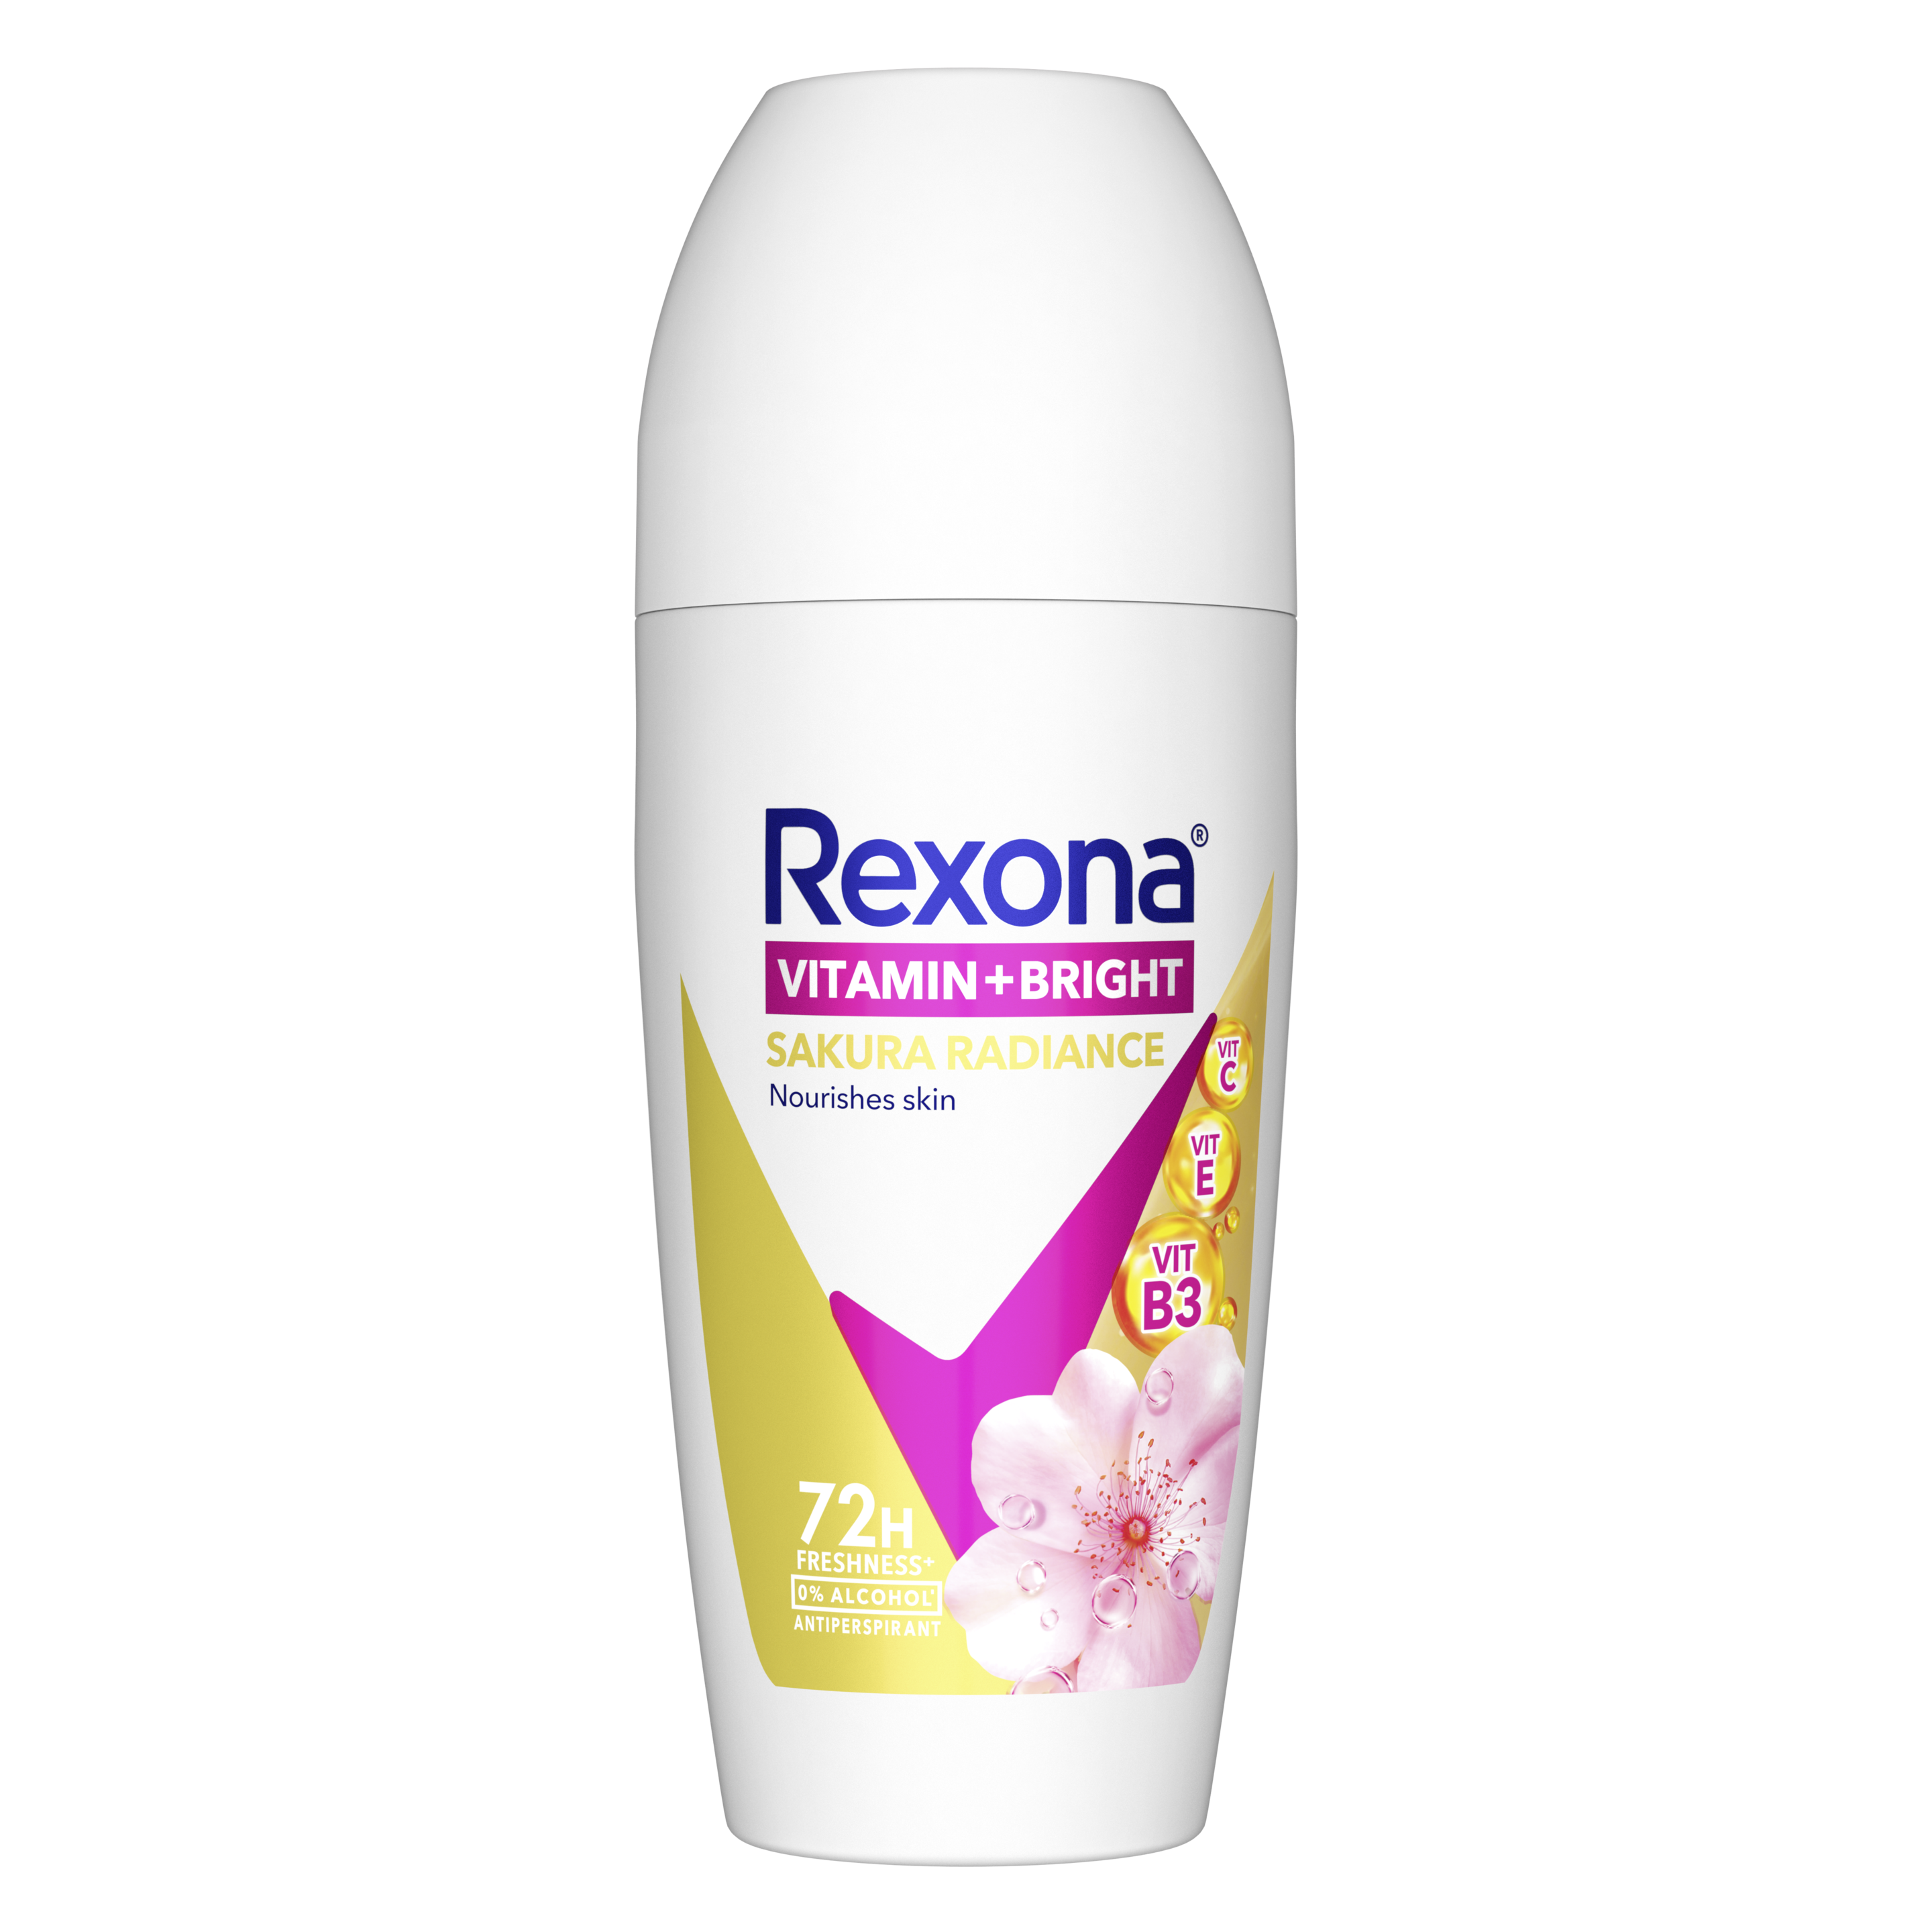 Rexona Vitamin+Bright Sakura Radiance Roll On